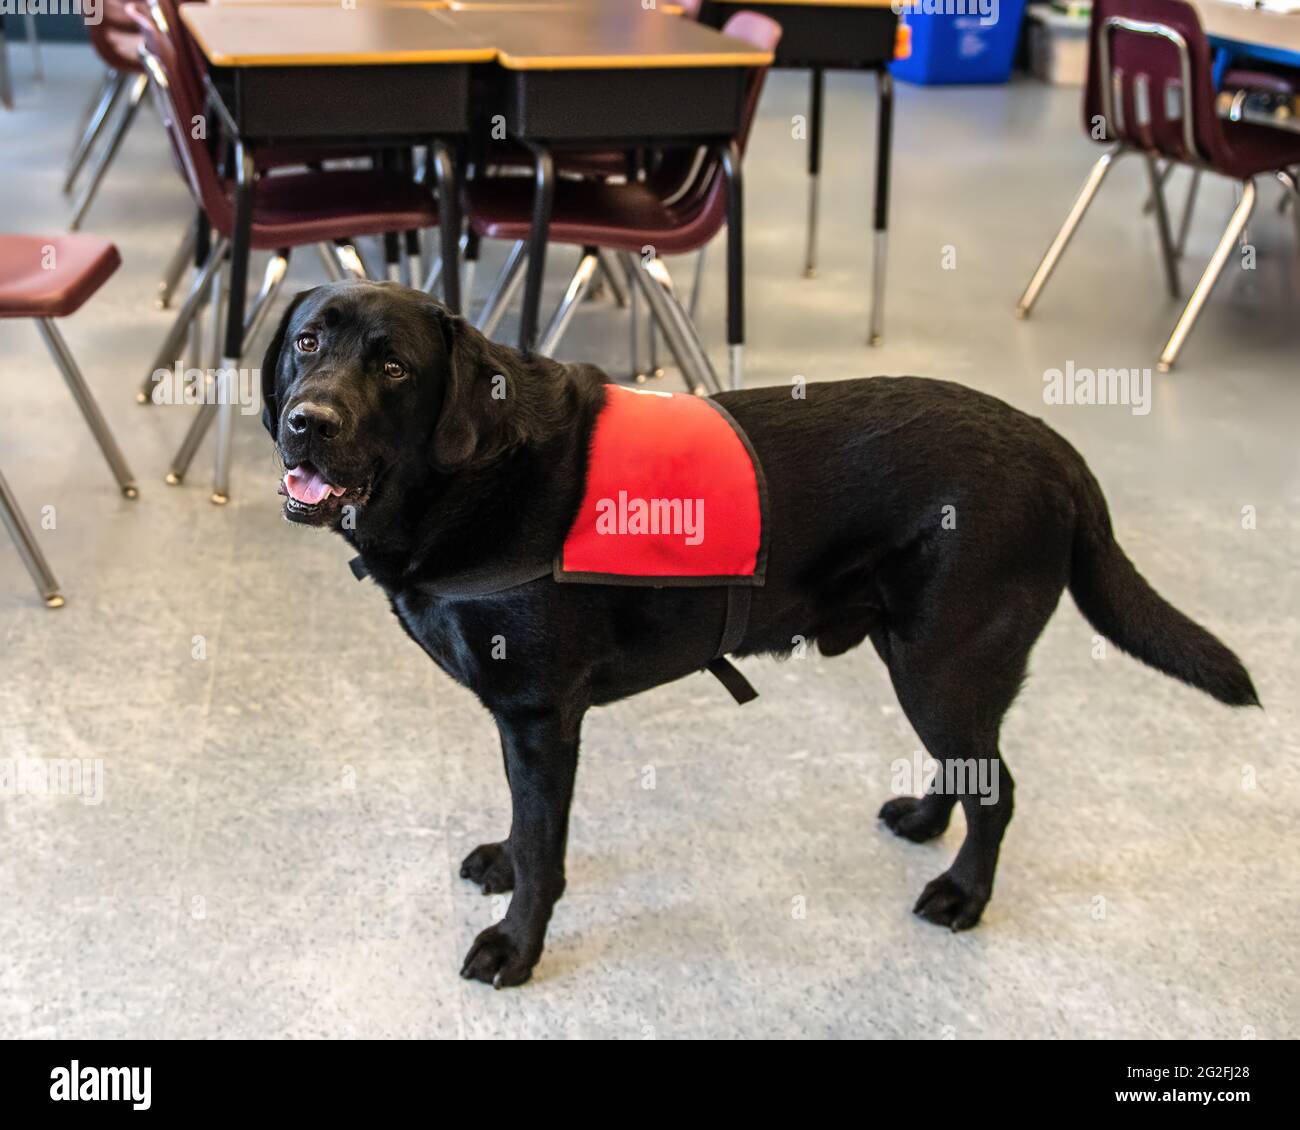 Black Labrador Service dog in a classroom Stock Photo